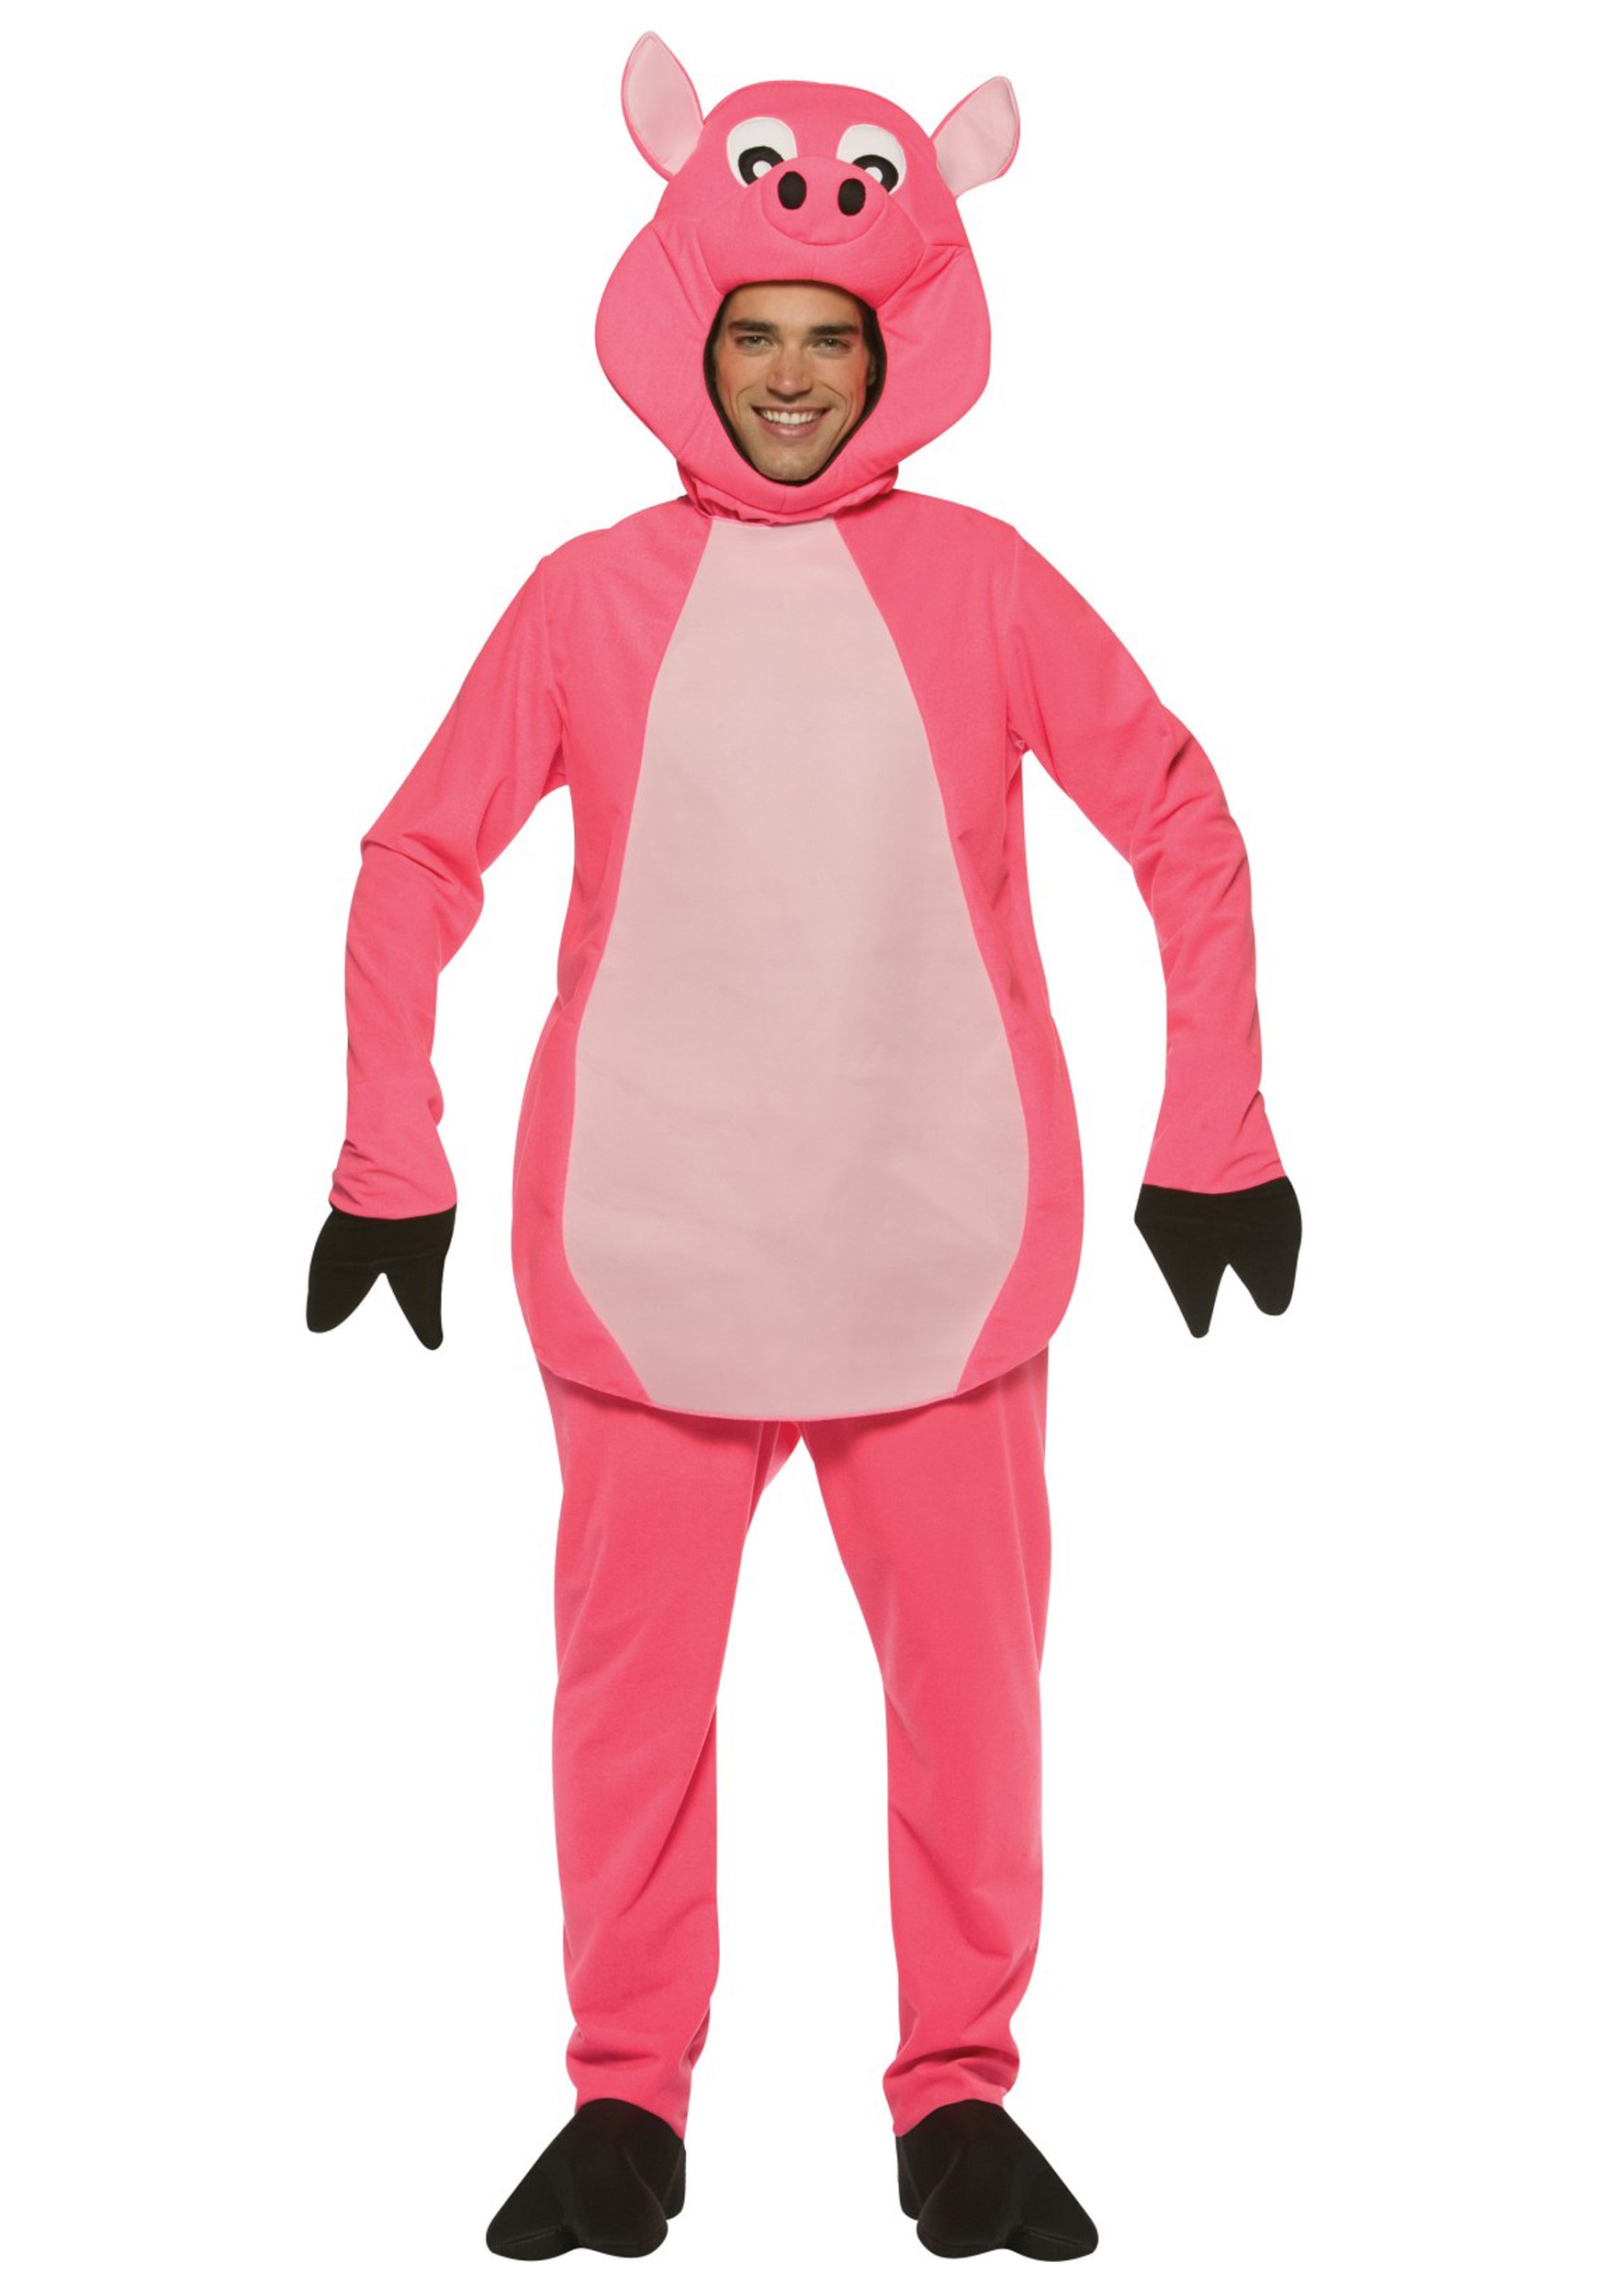 Wee Piggie Costume